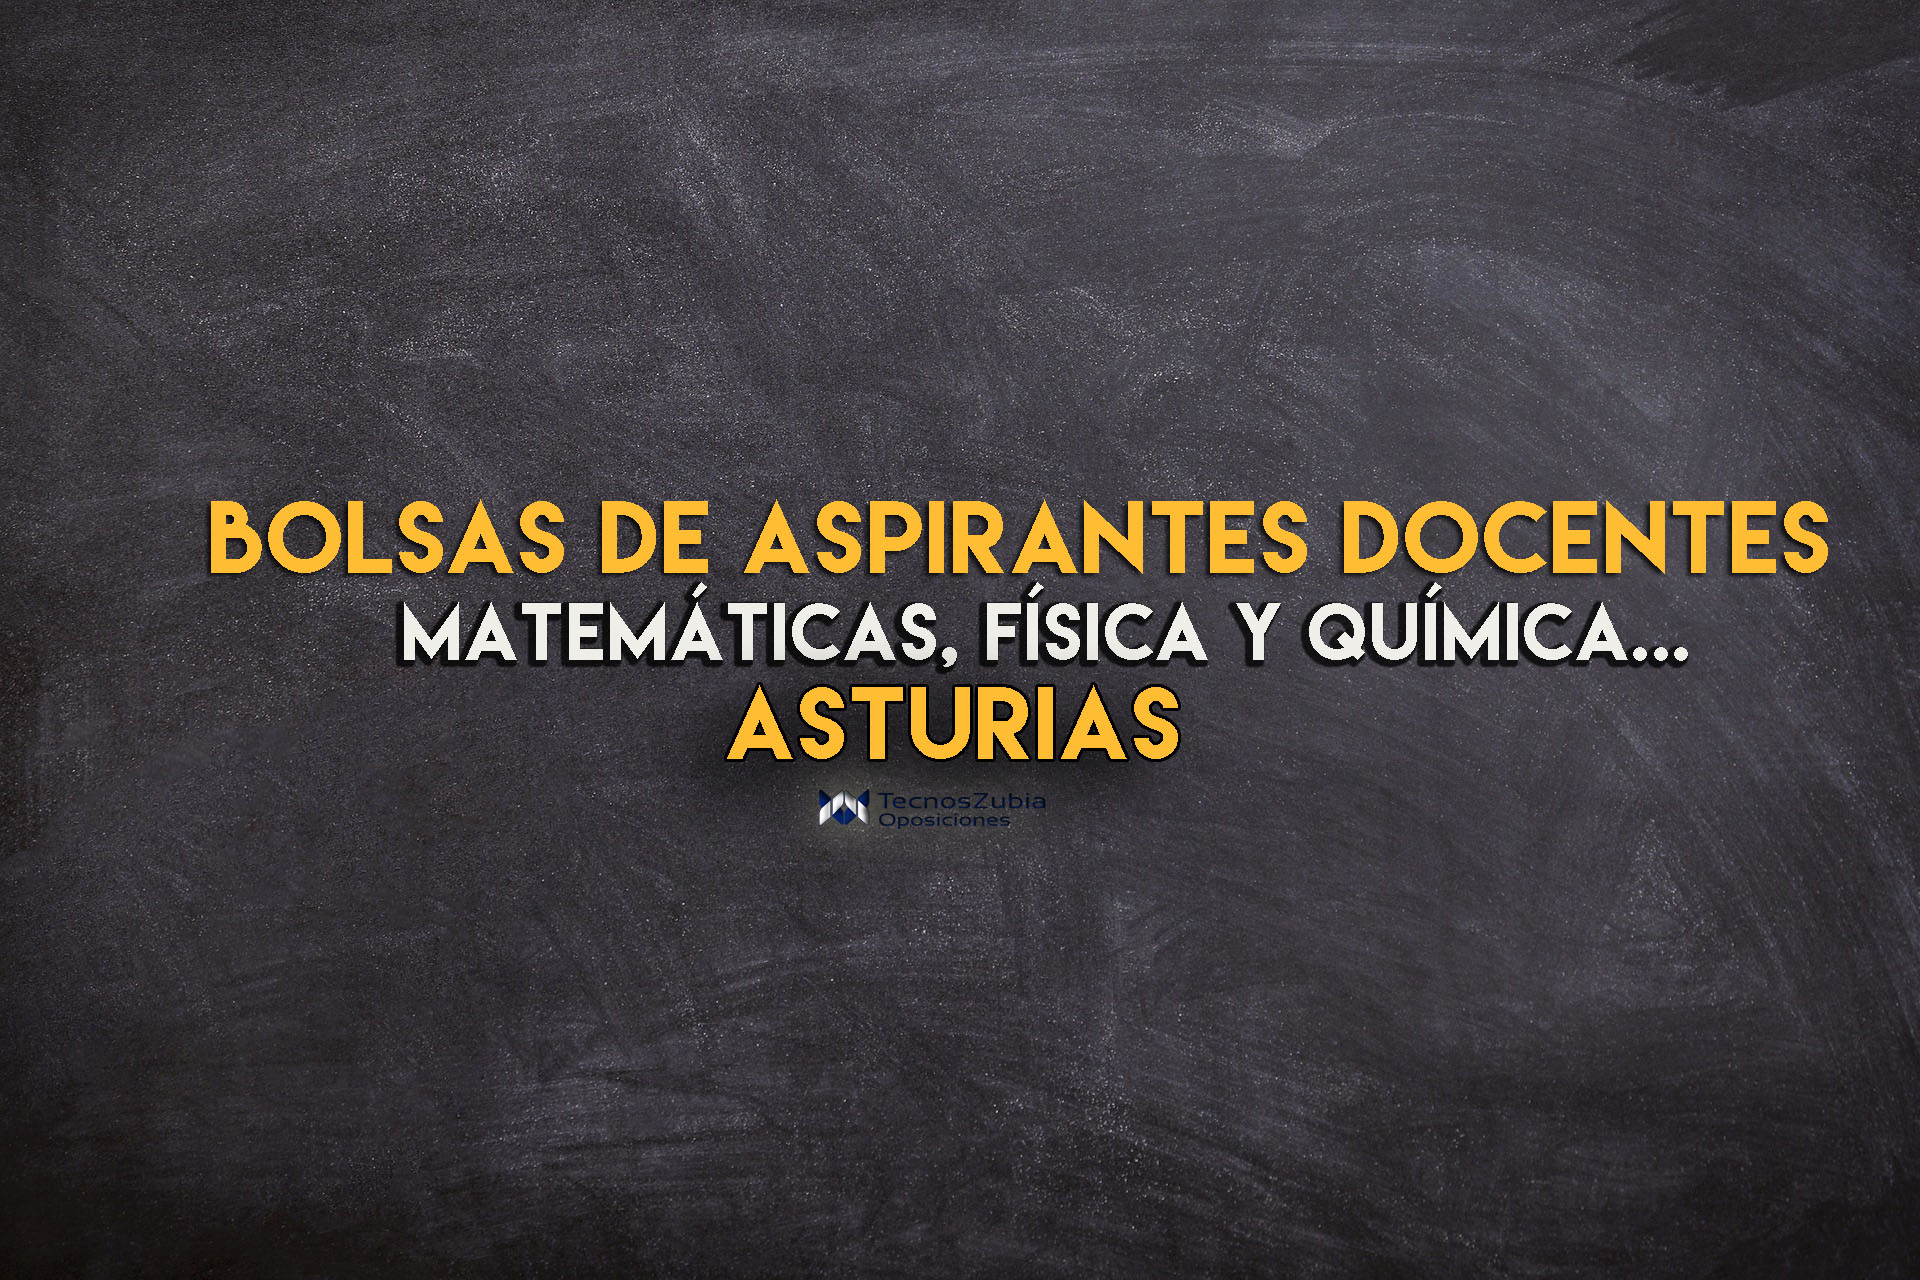 bolsas de aspirantes docentes asturias